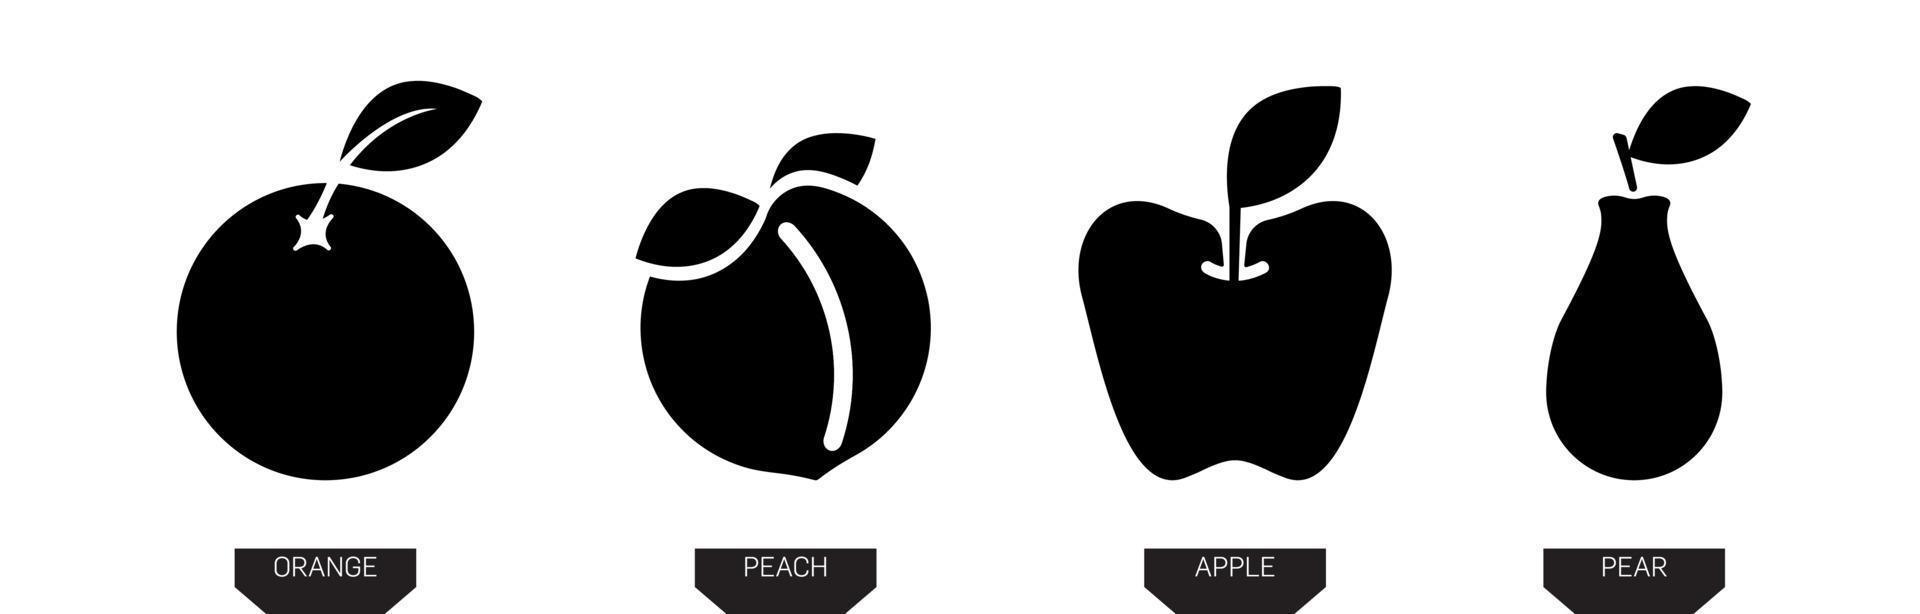 frukt ikoner. päron, äpple, apelsin och persika siluett vektor ikon illustration i svart färg isolerad på vit bakgrund. silet frukt ikon. modern linjekonstdesign.